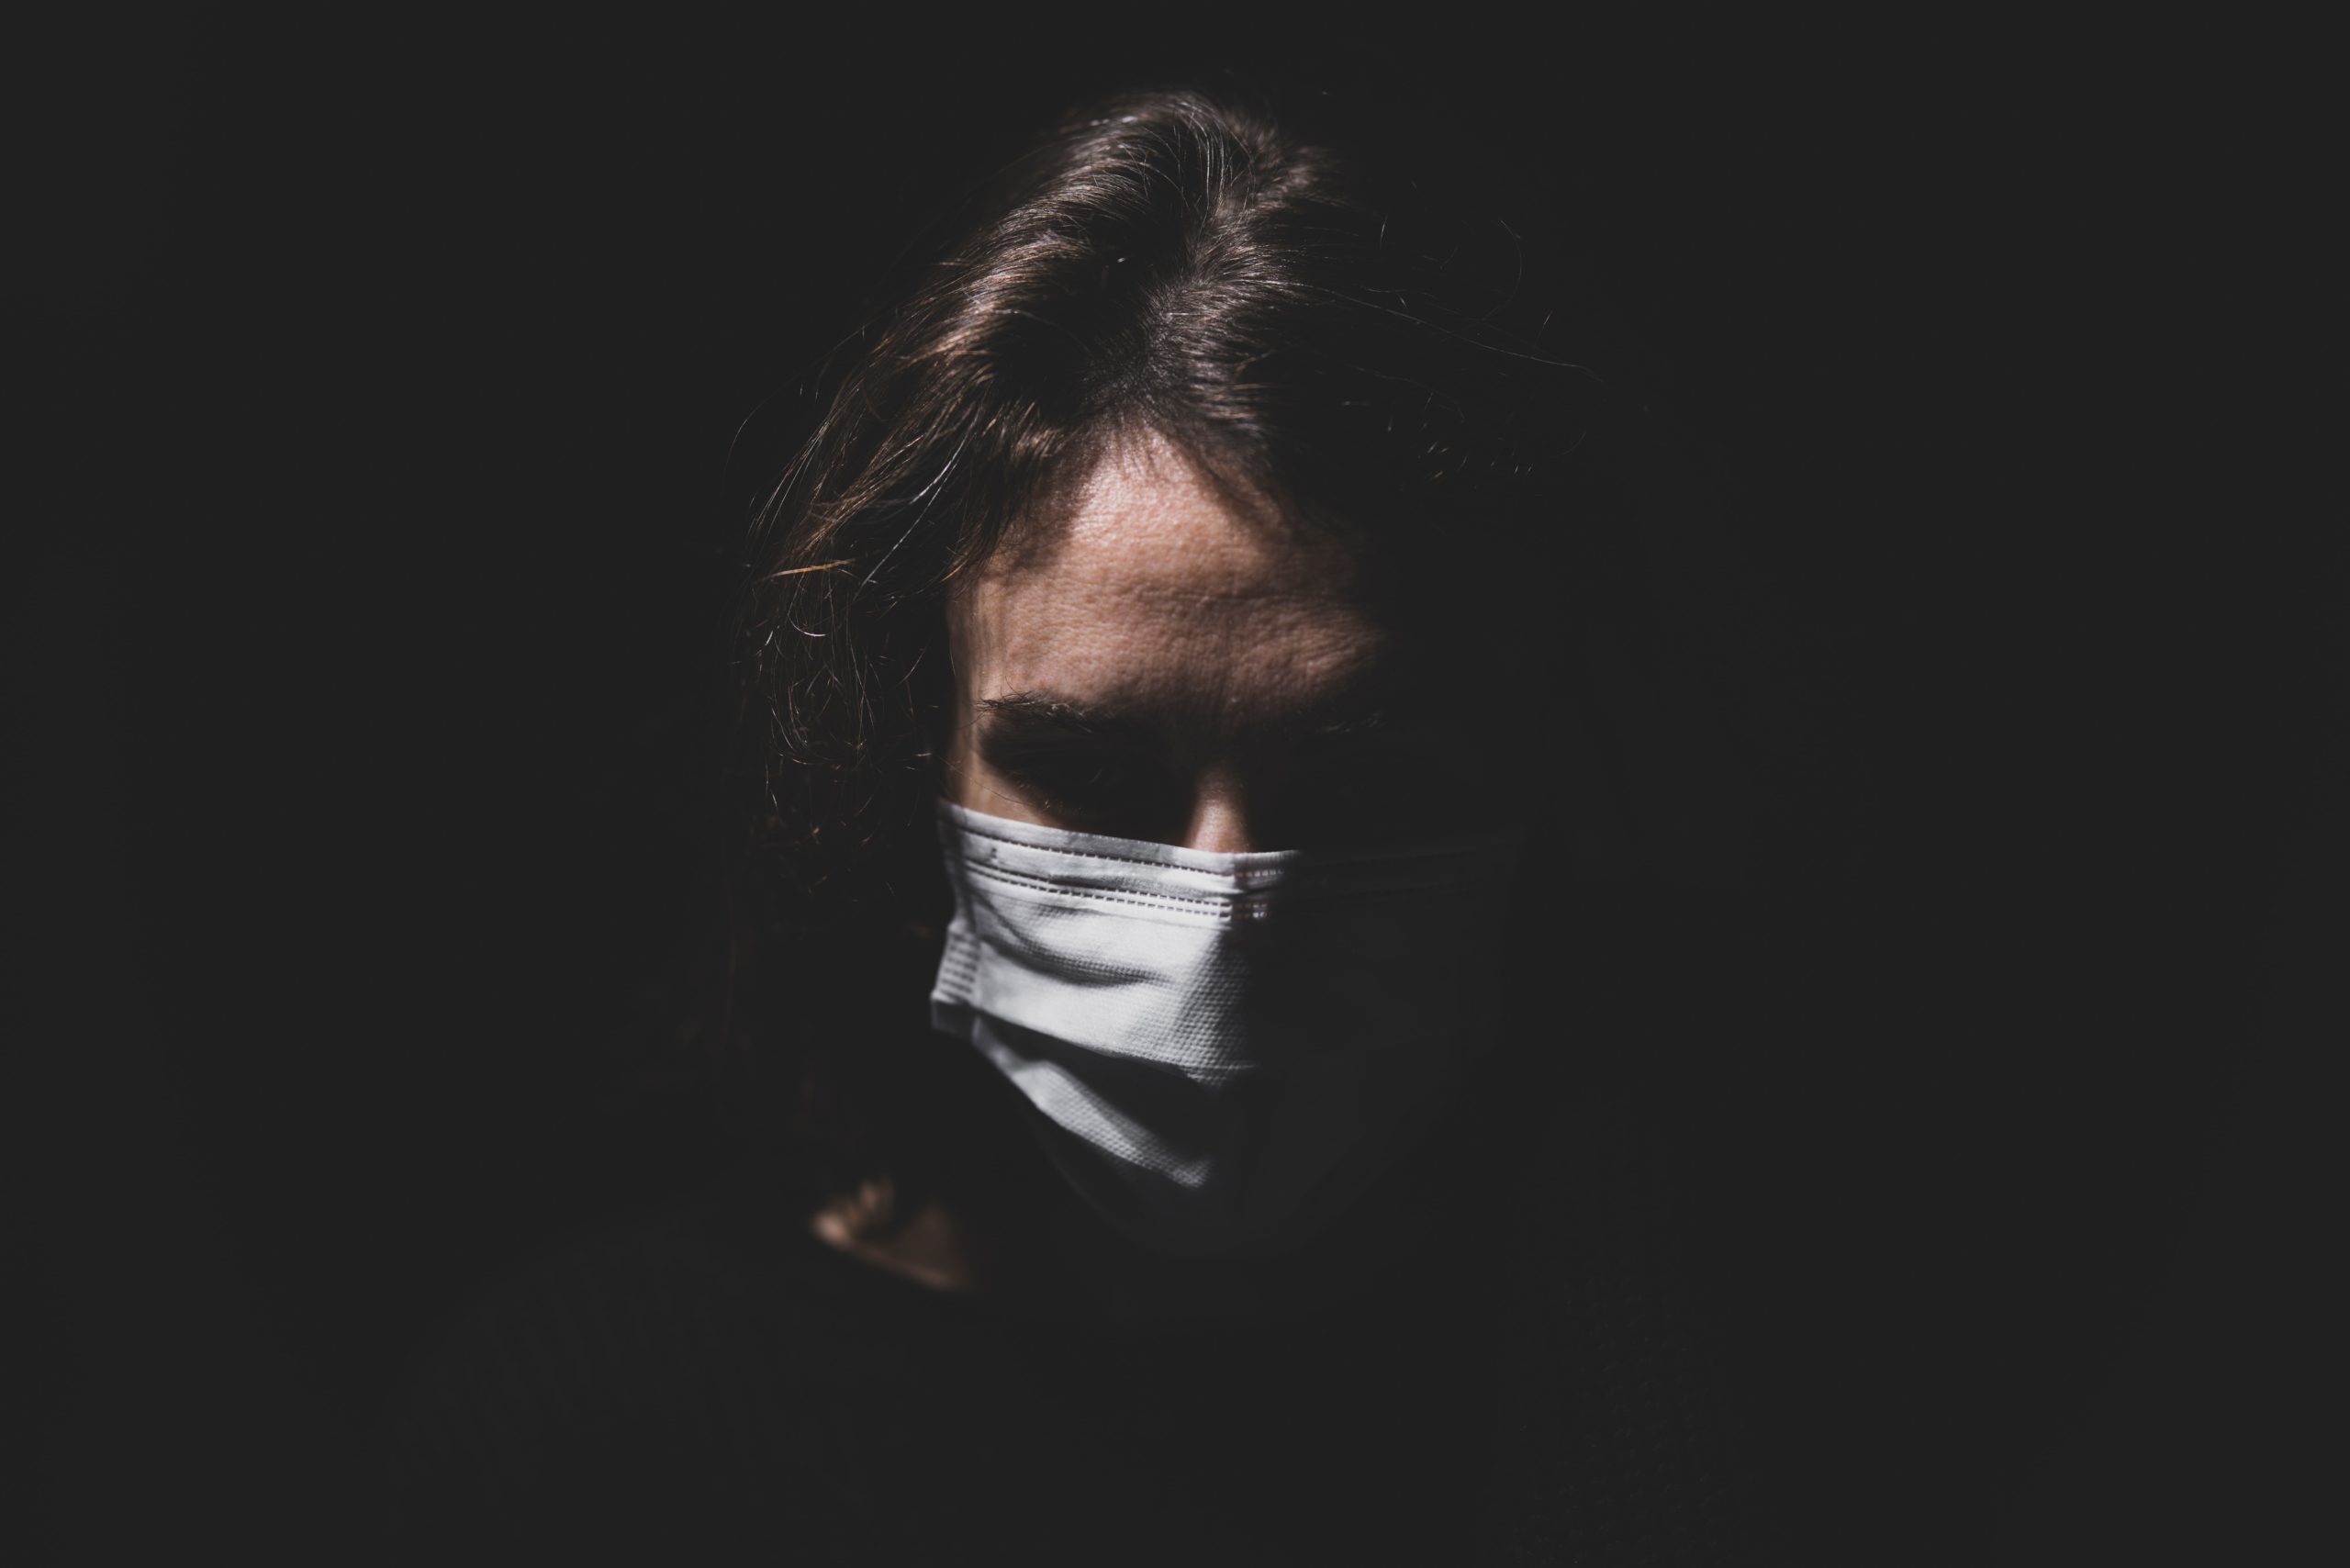 Ήρθε η μάσκα που λάμπει όταν κάποιος έχει κορονοϊό – Φτιάχτηκε στην Ιαπωνία (φωτογραφία)